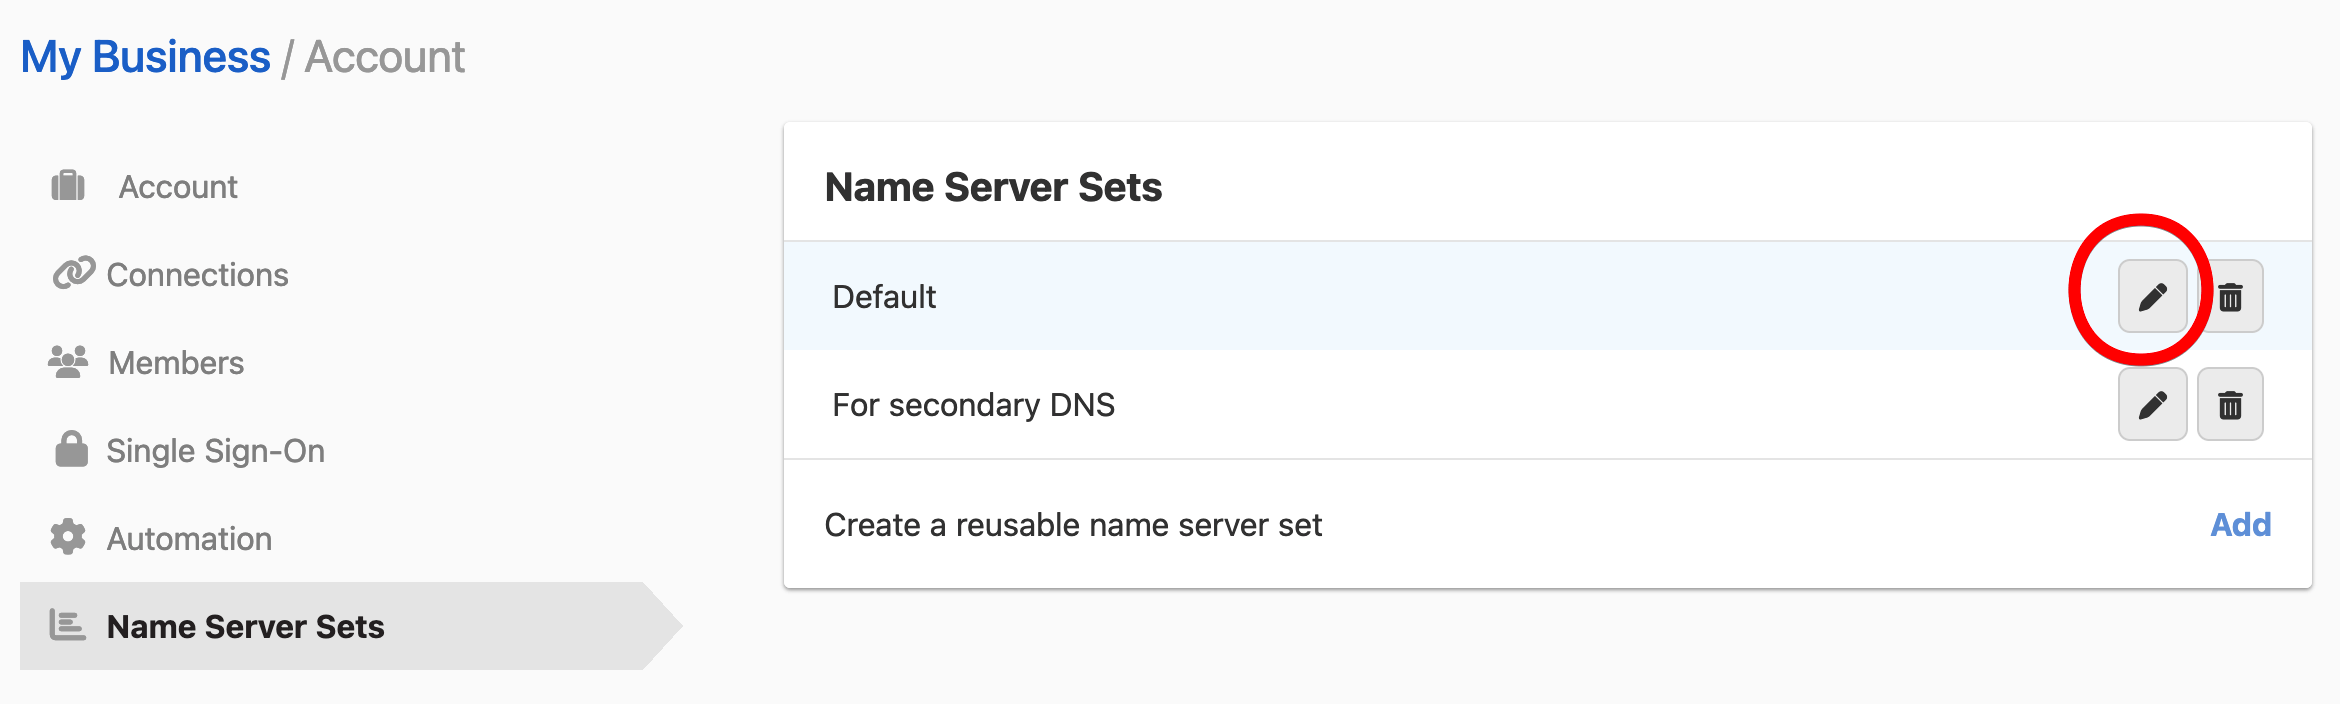 Editing a name server set